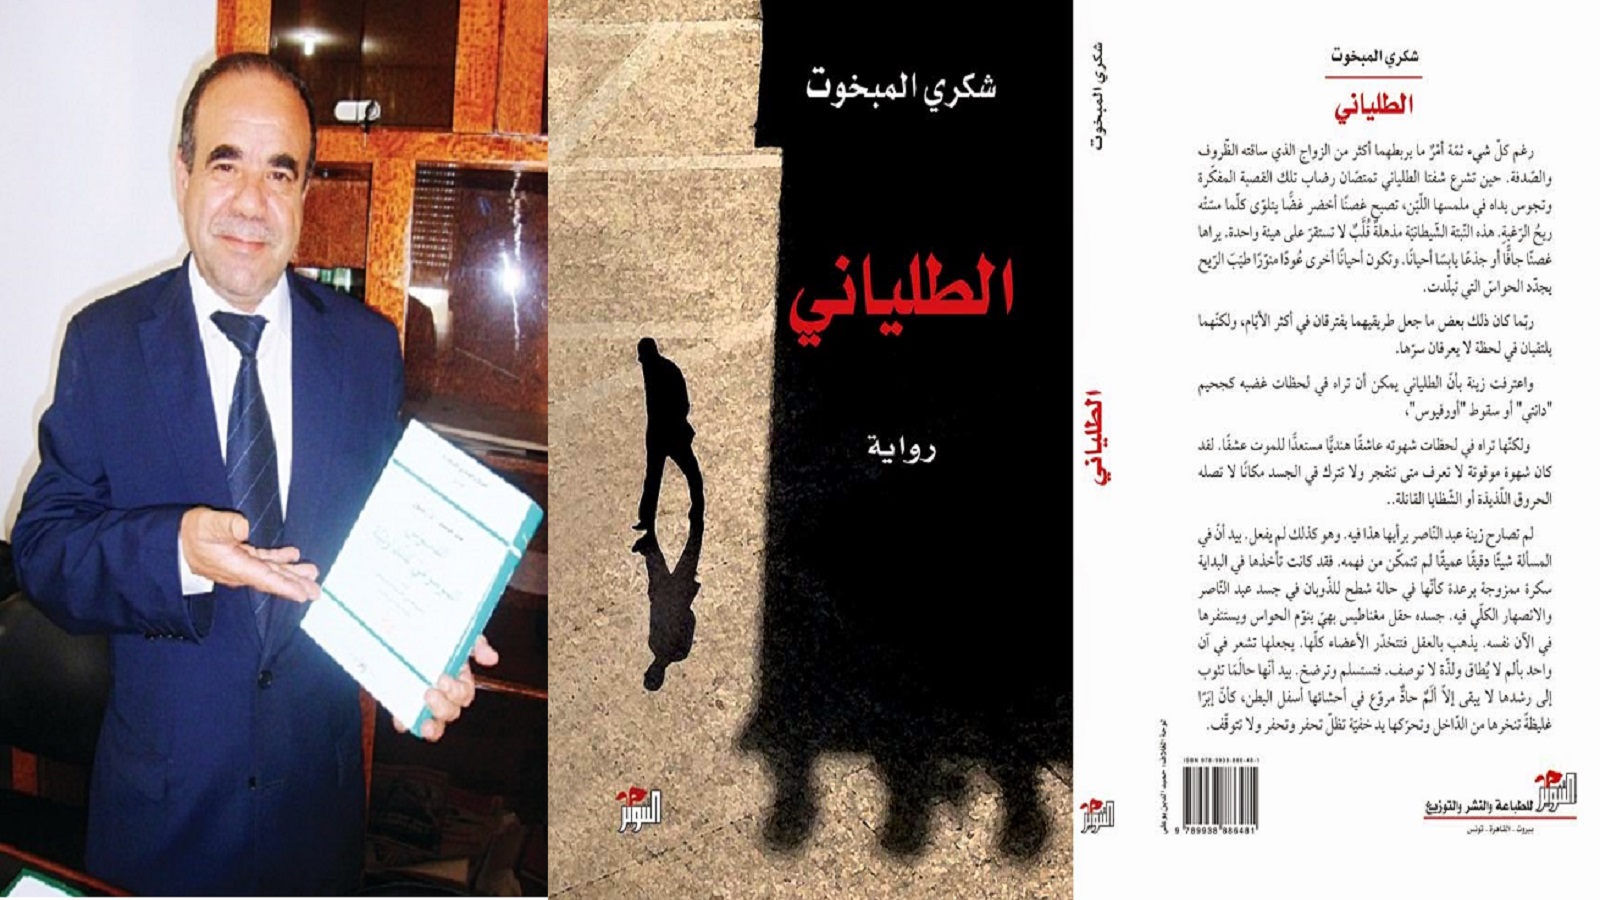 الروائي التونسي شكري المبخوت... عن الرواية والثورة والمثقف والسياسة